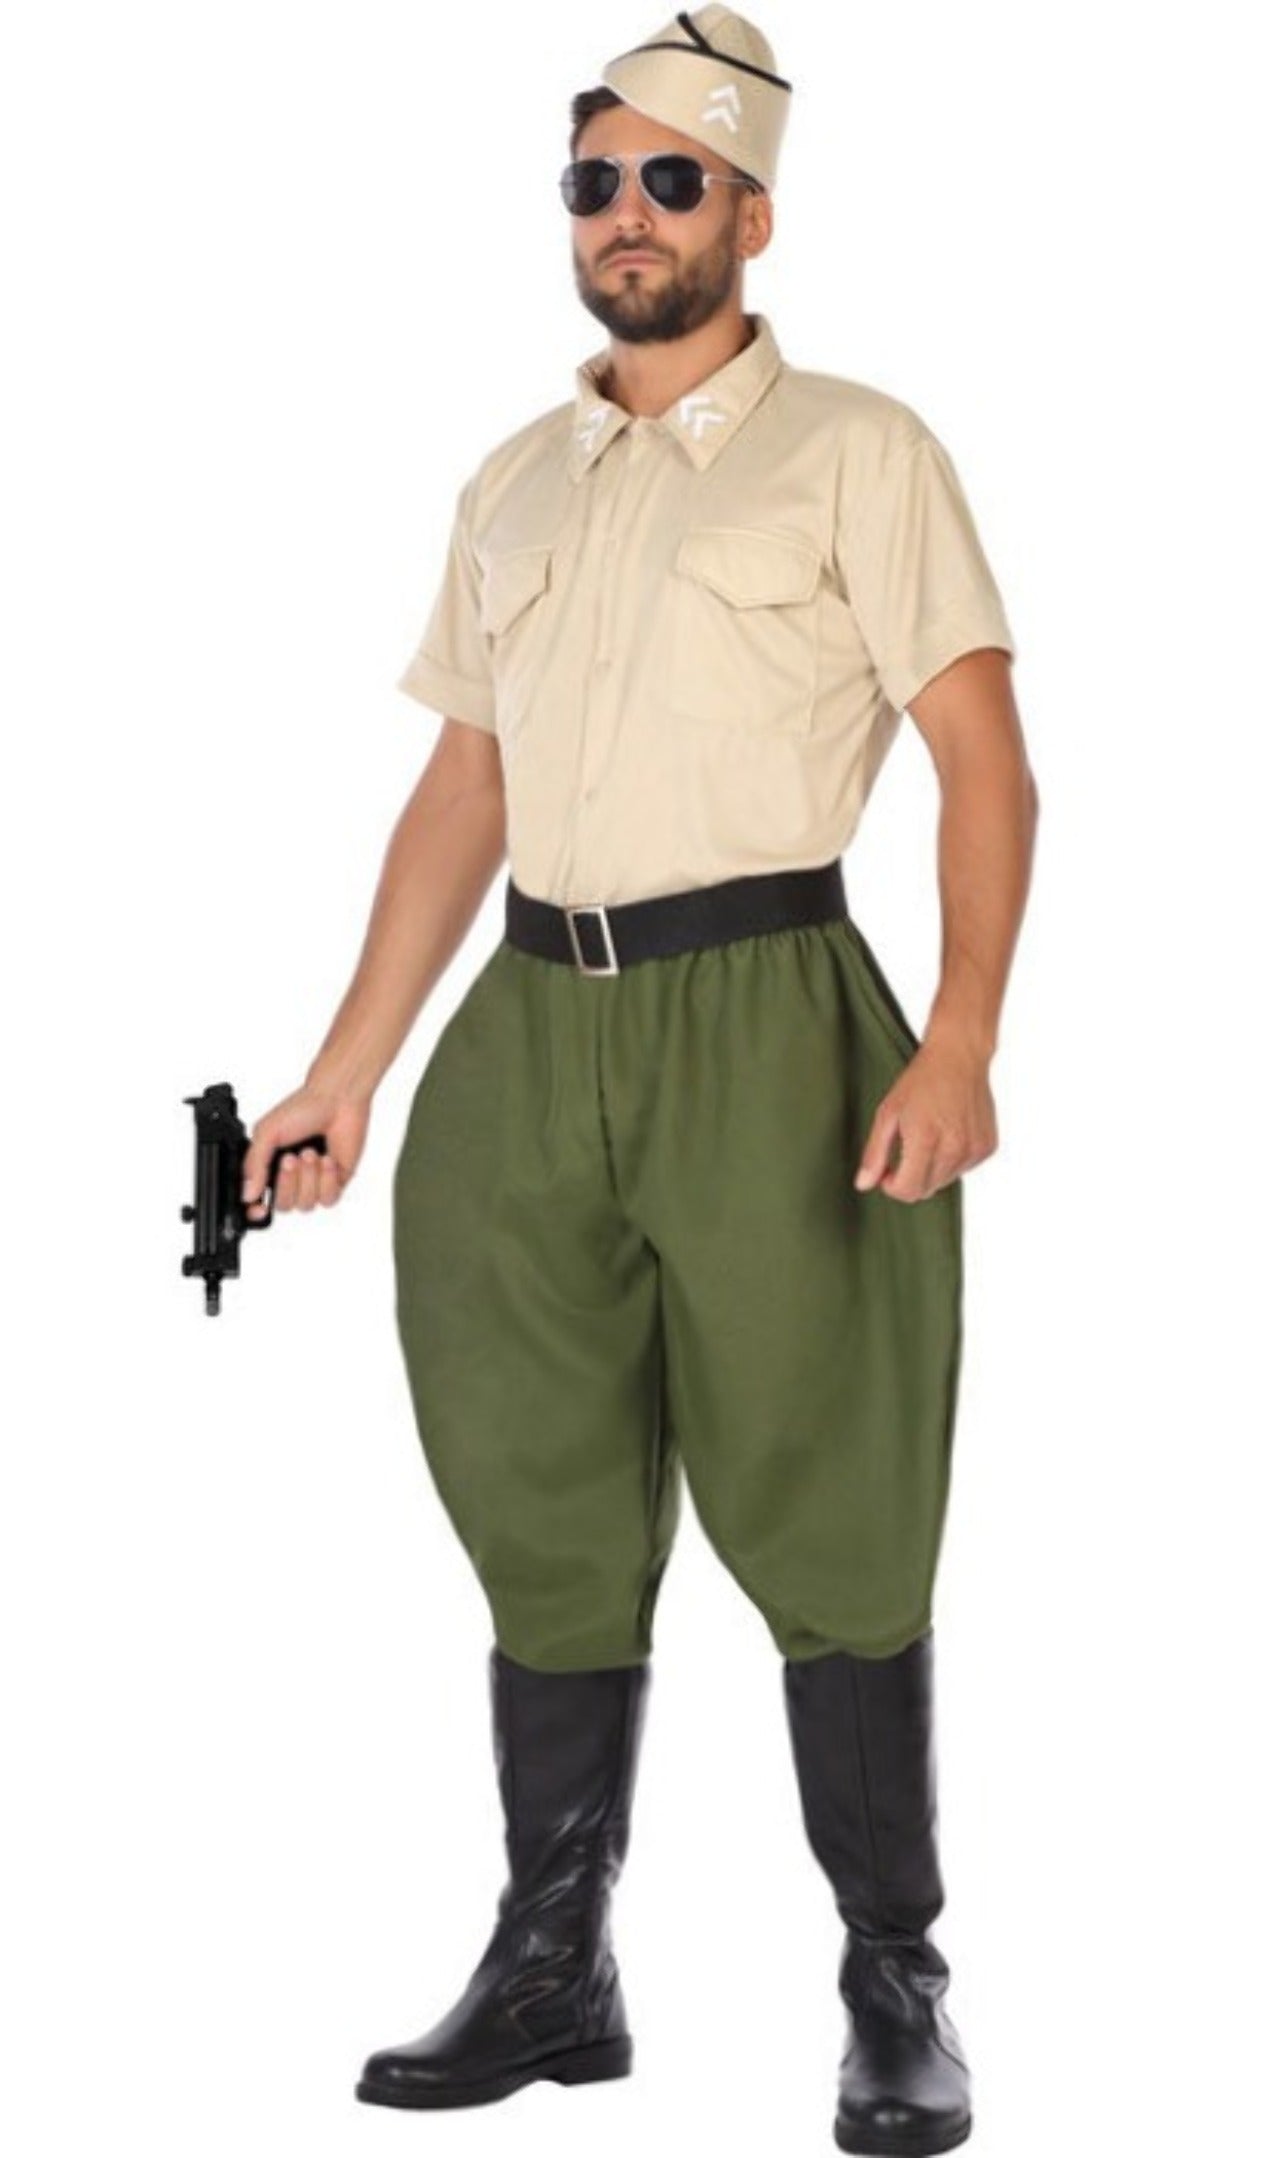 Camiseta militar hombre: Disfraces adultos,y disfraces originales